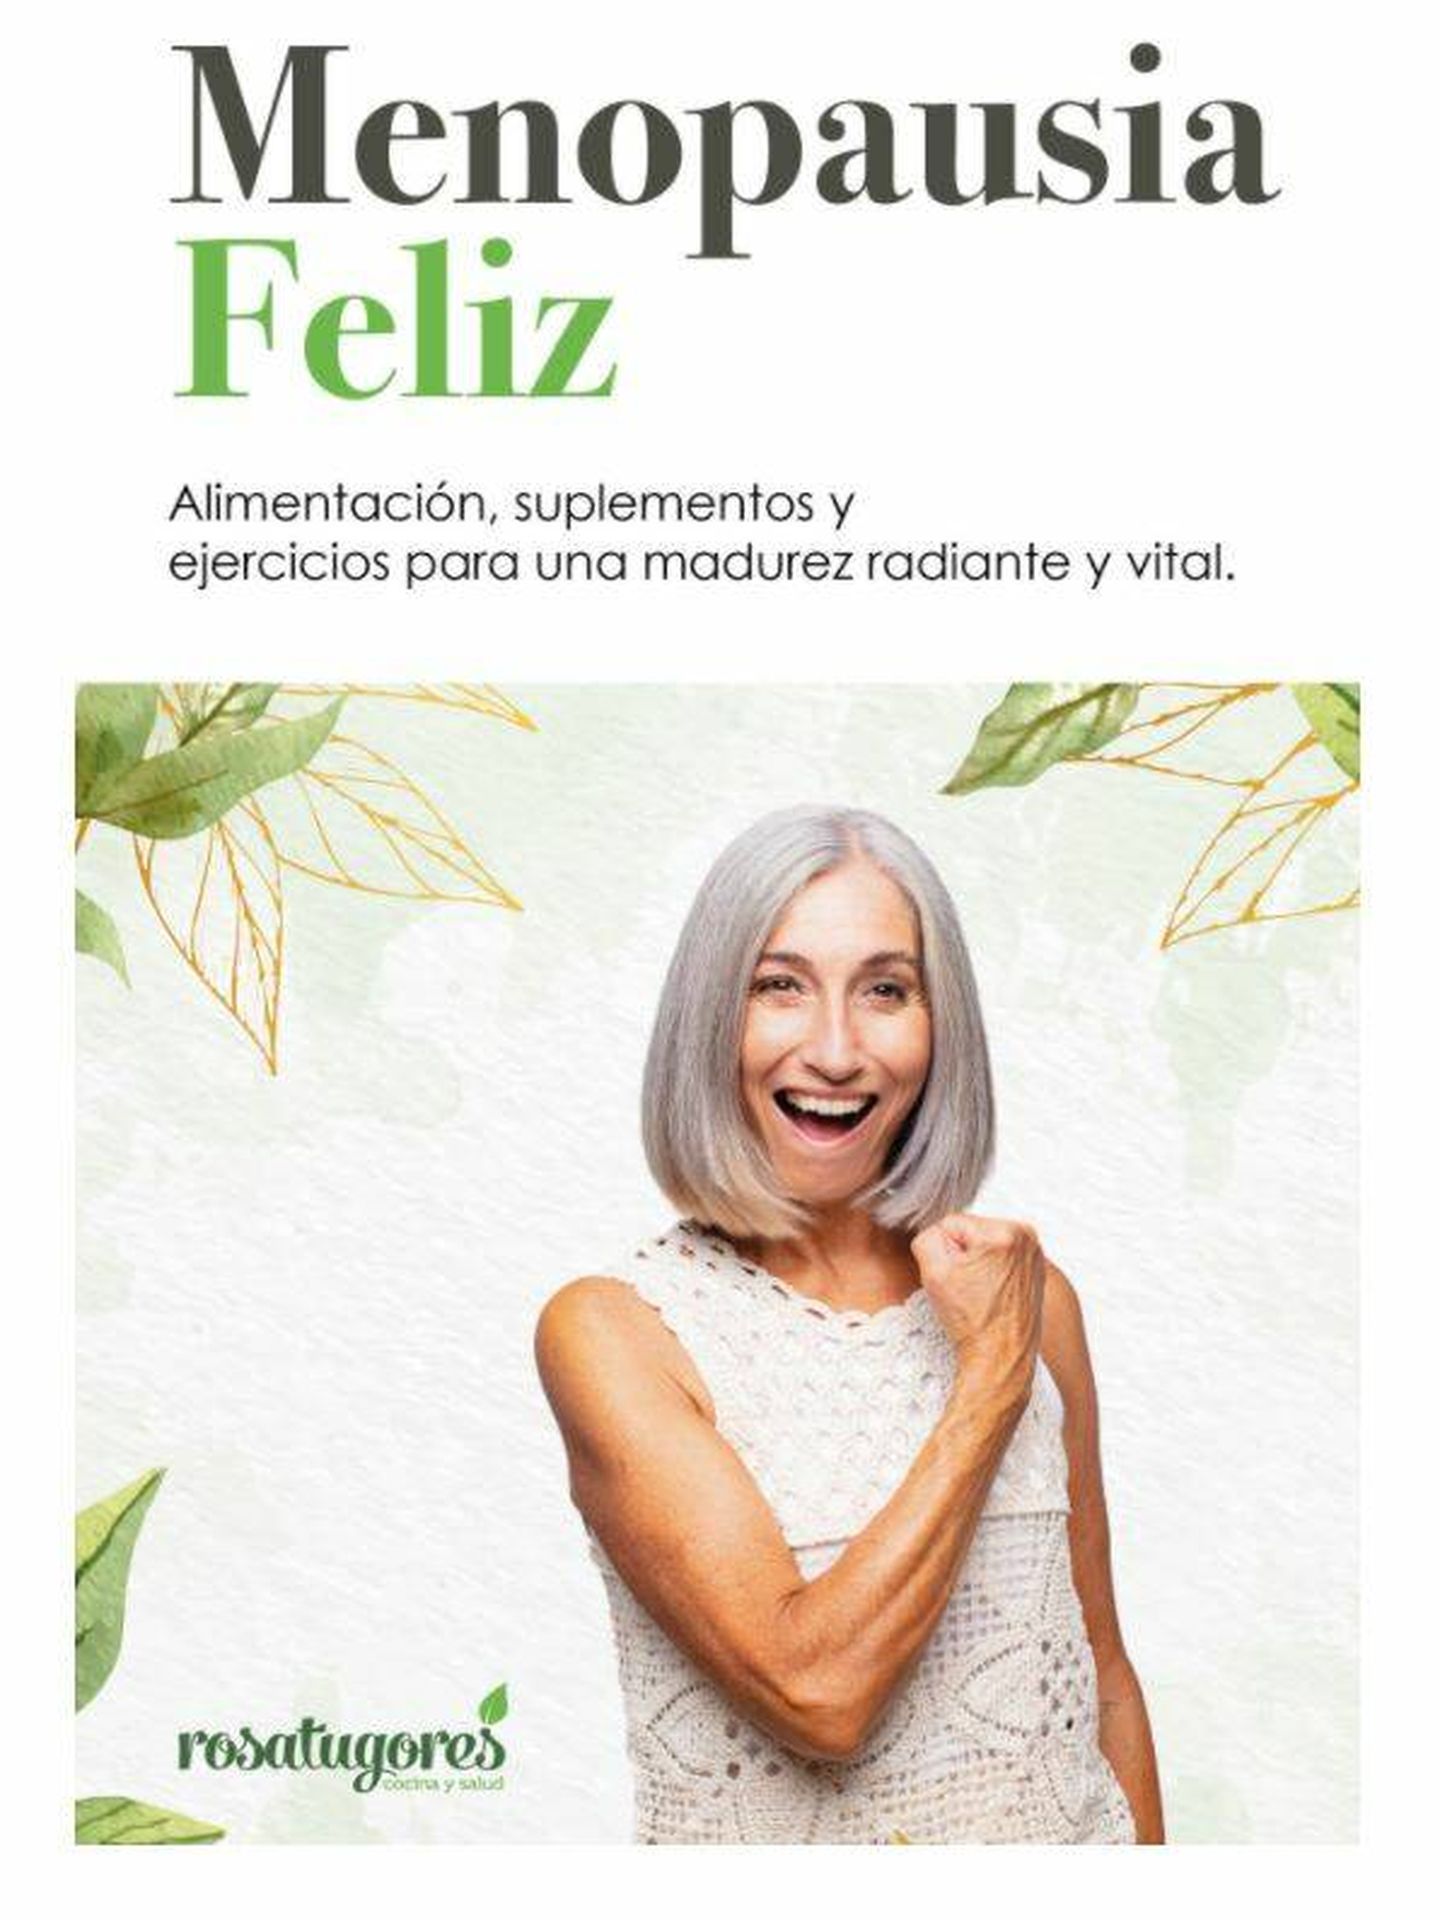 'Menopausia feliz' a la venta en Amazon. (Cortesía)